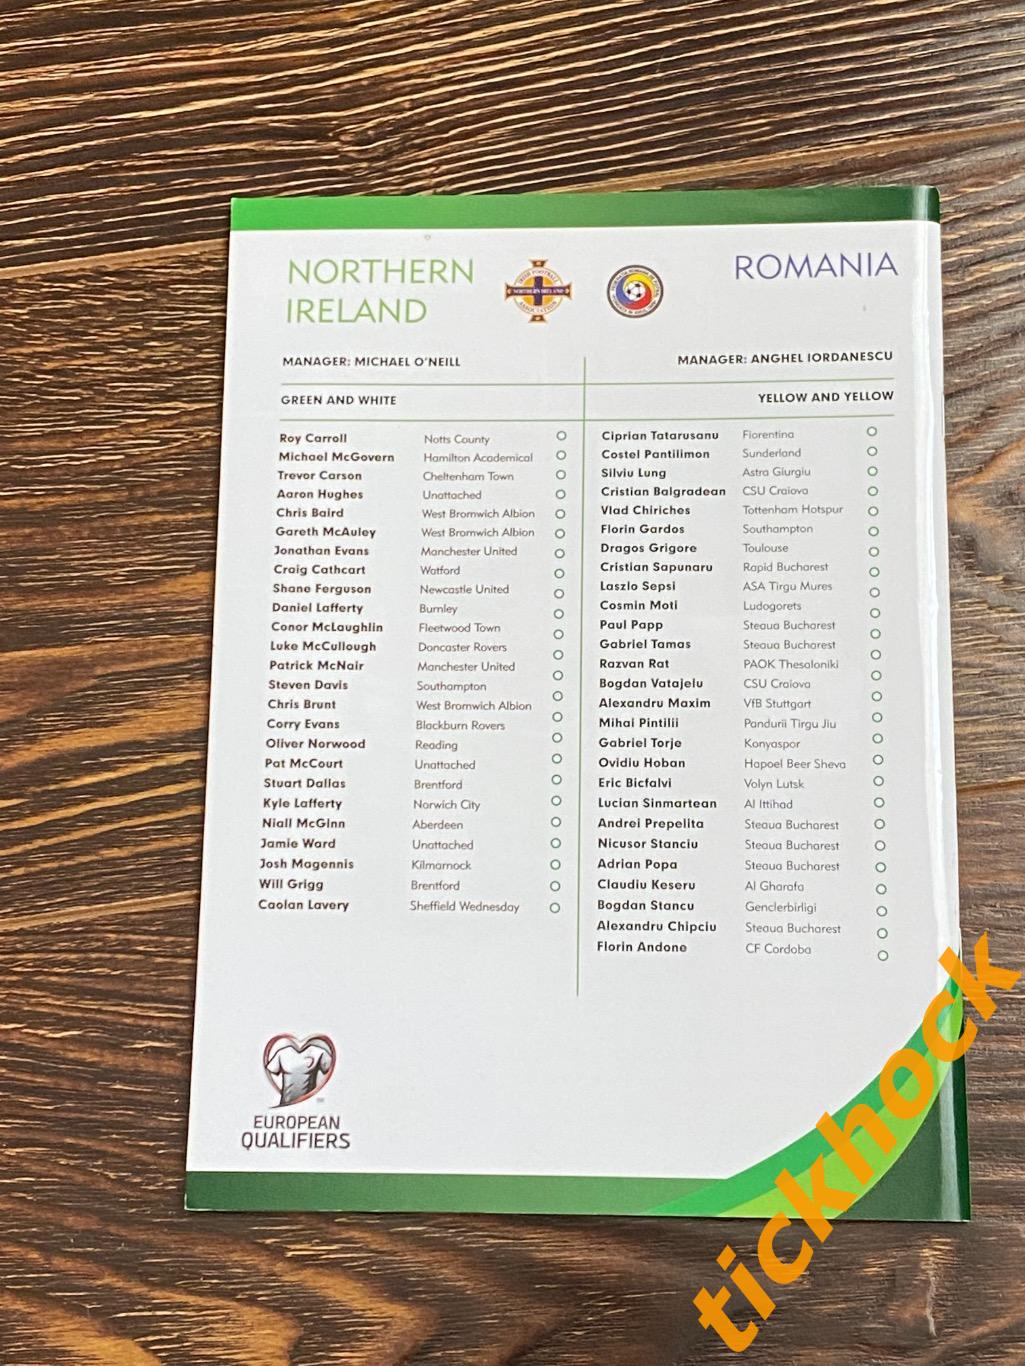 Официальная Программа: Северная Ирландия - Румыния 2015 1